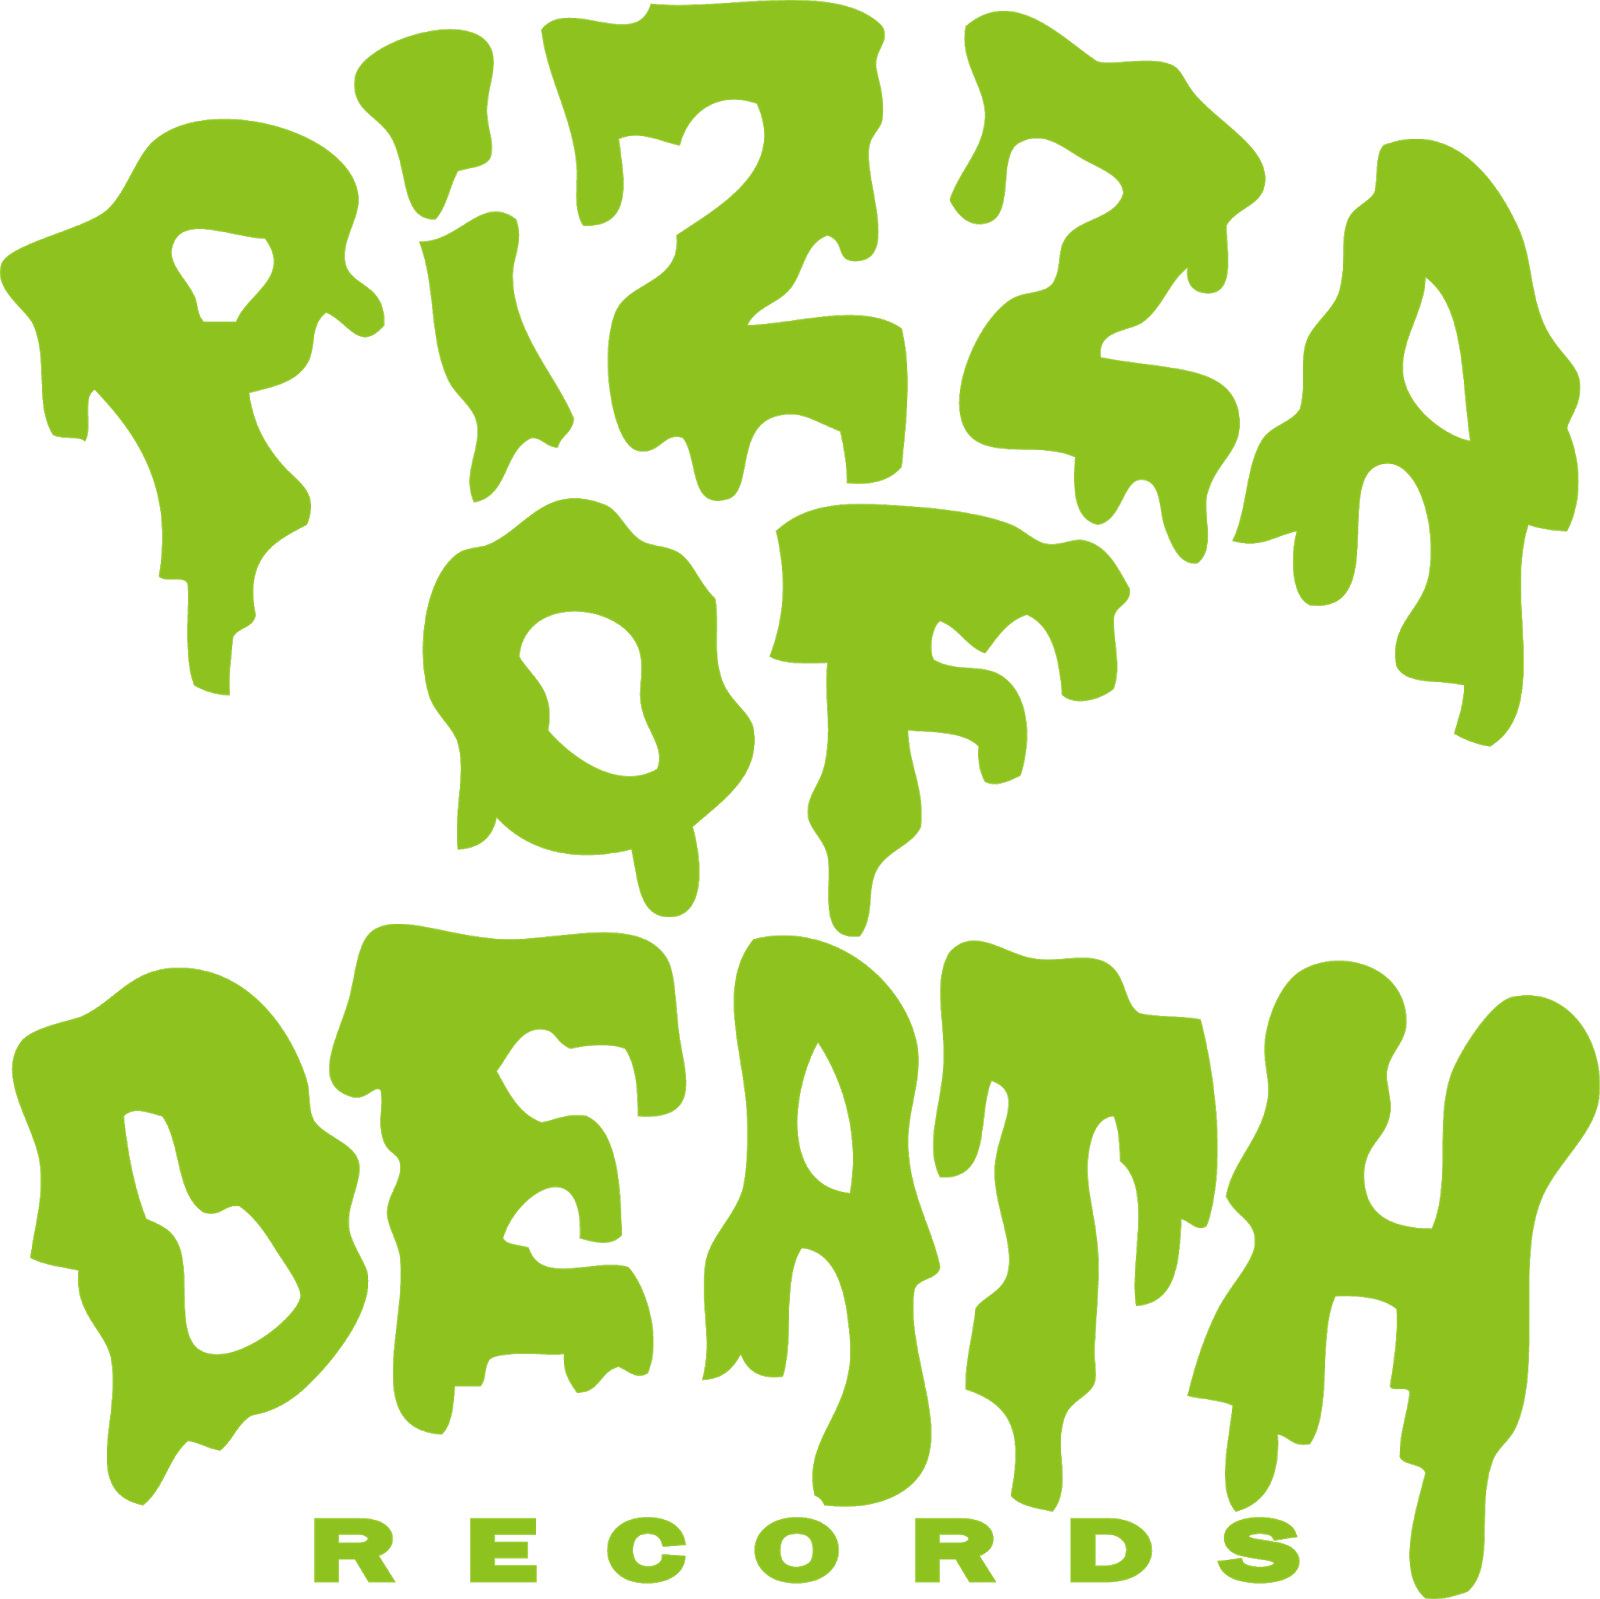 Logodol 全てが高画質 背景透過なアーティストのロゴをお届けするブログ Pizza Of Death の高画質ロゴデータ